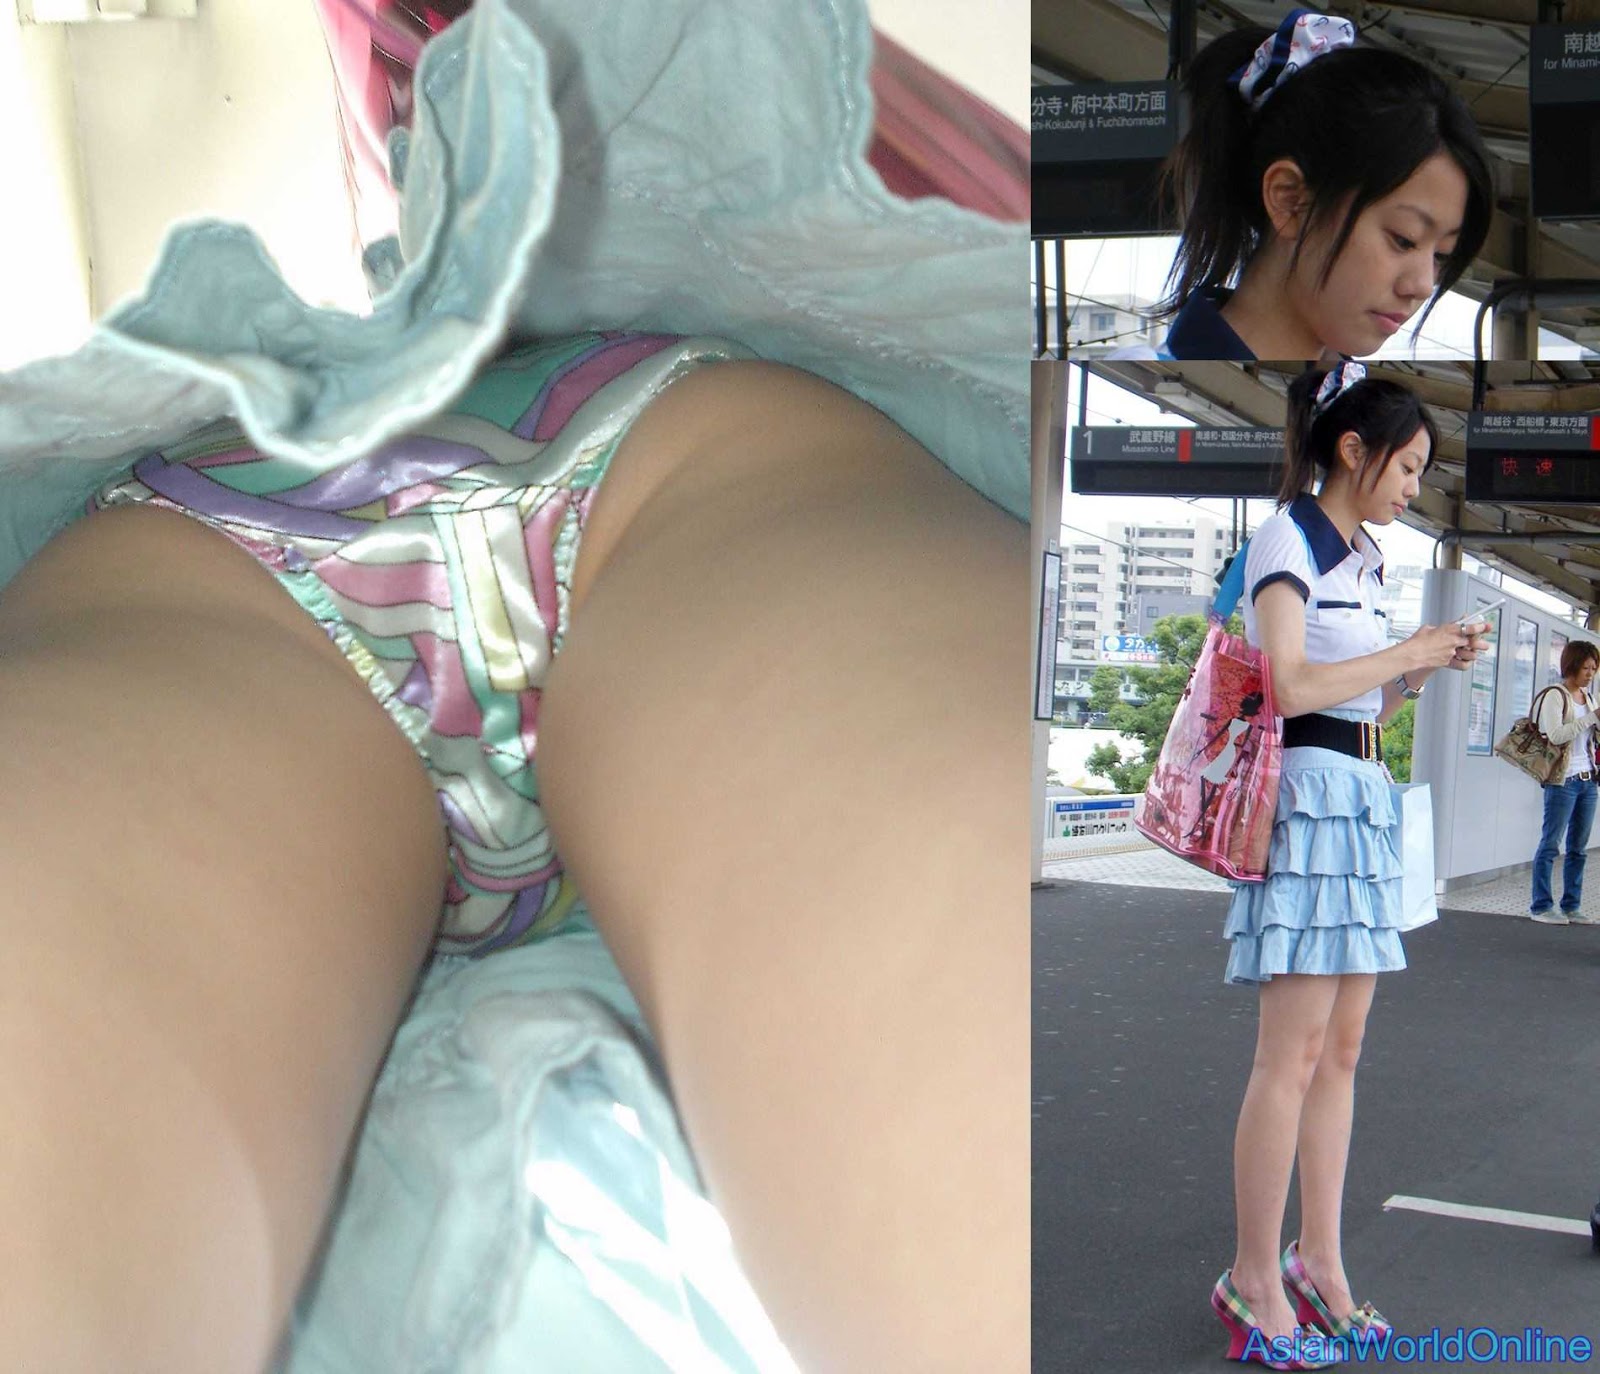 Japanese Upskirt Forum - Japan upskirt photos - New porn